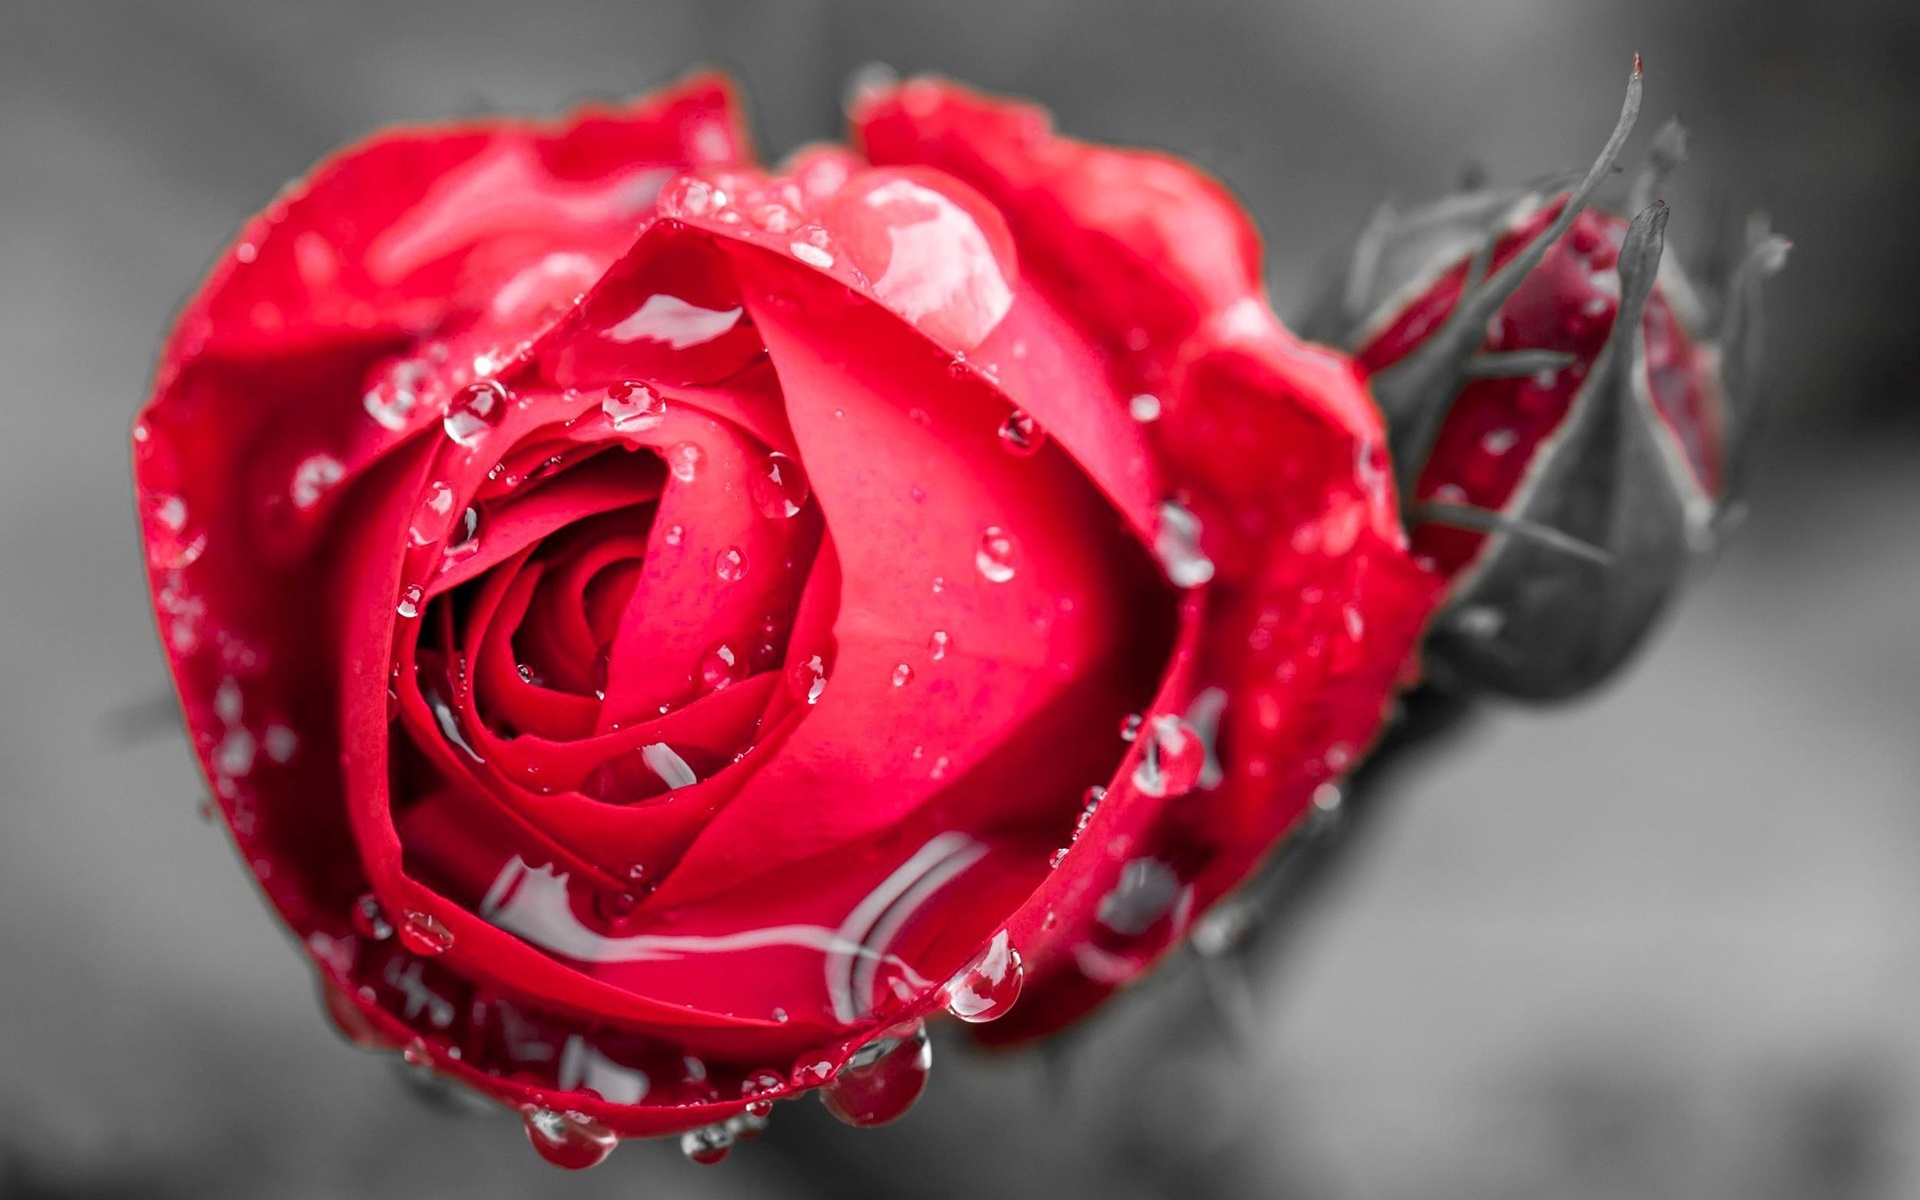 一朵红玫瑰唯美图片图片